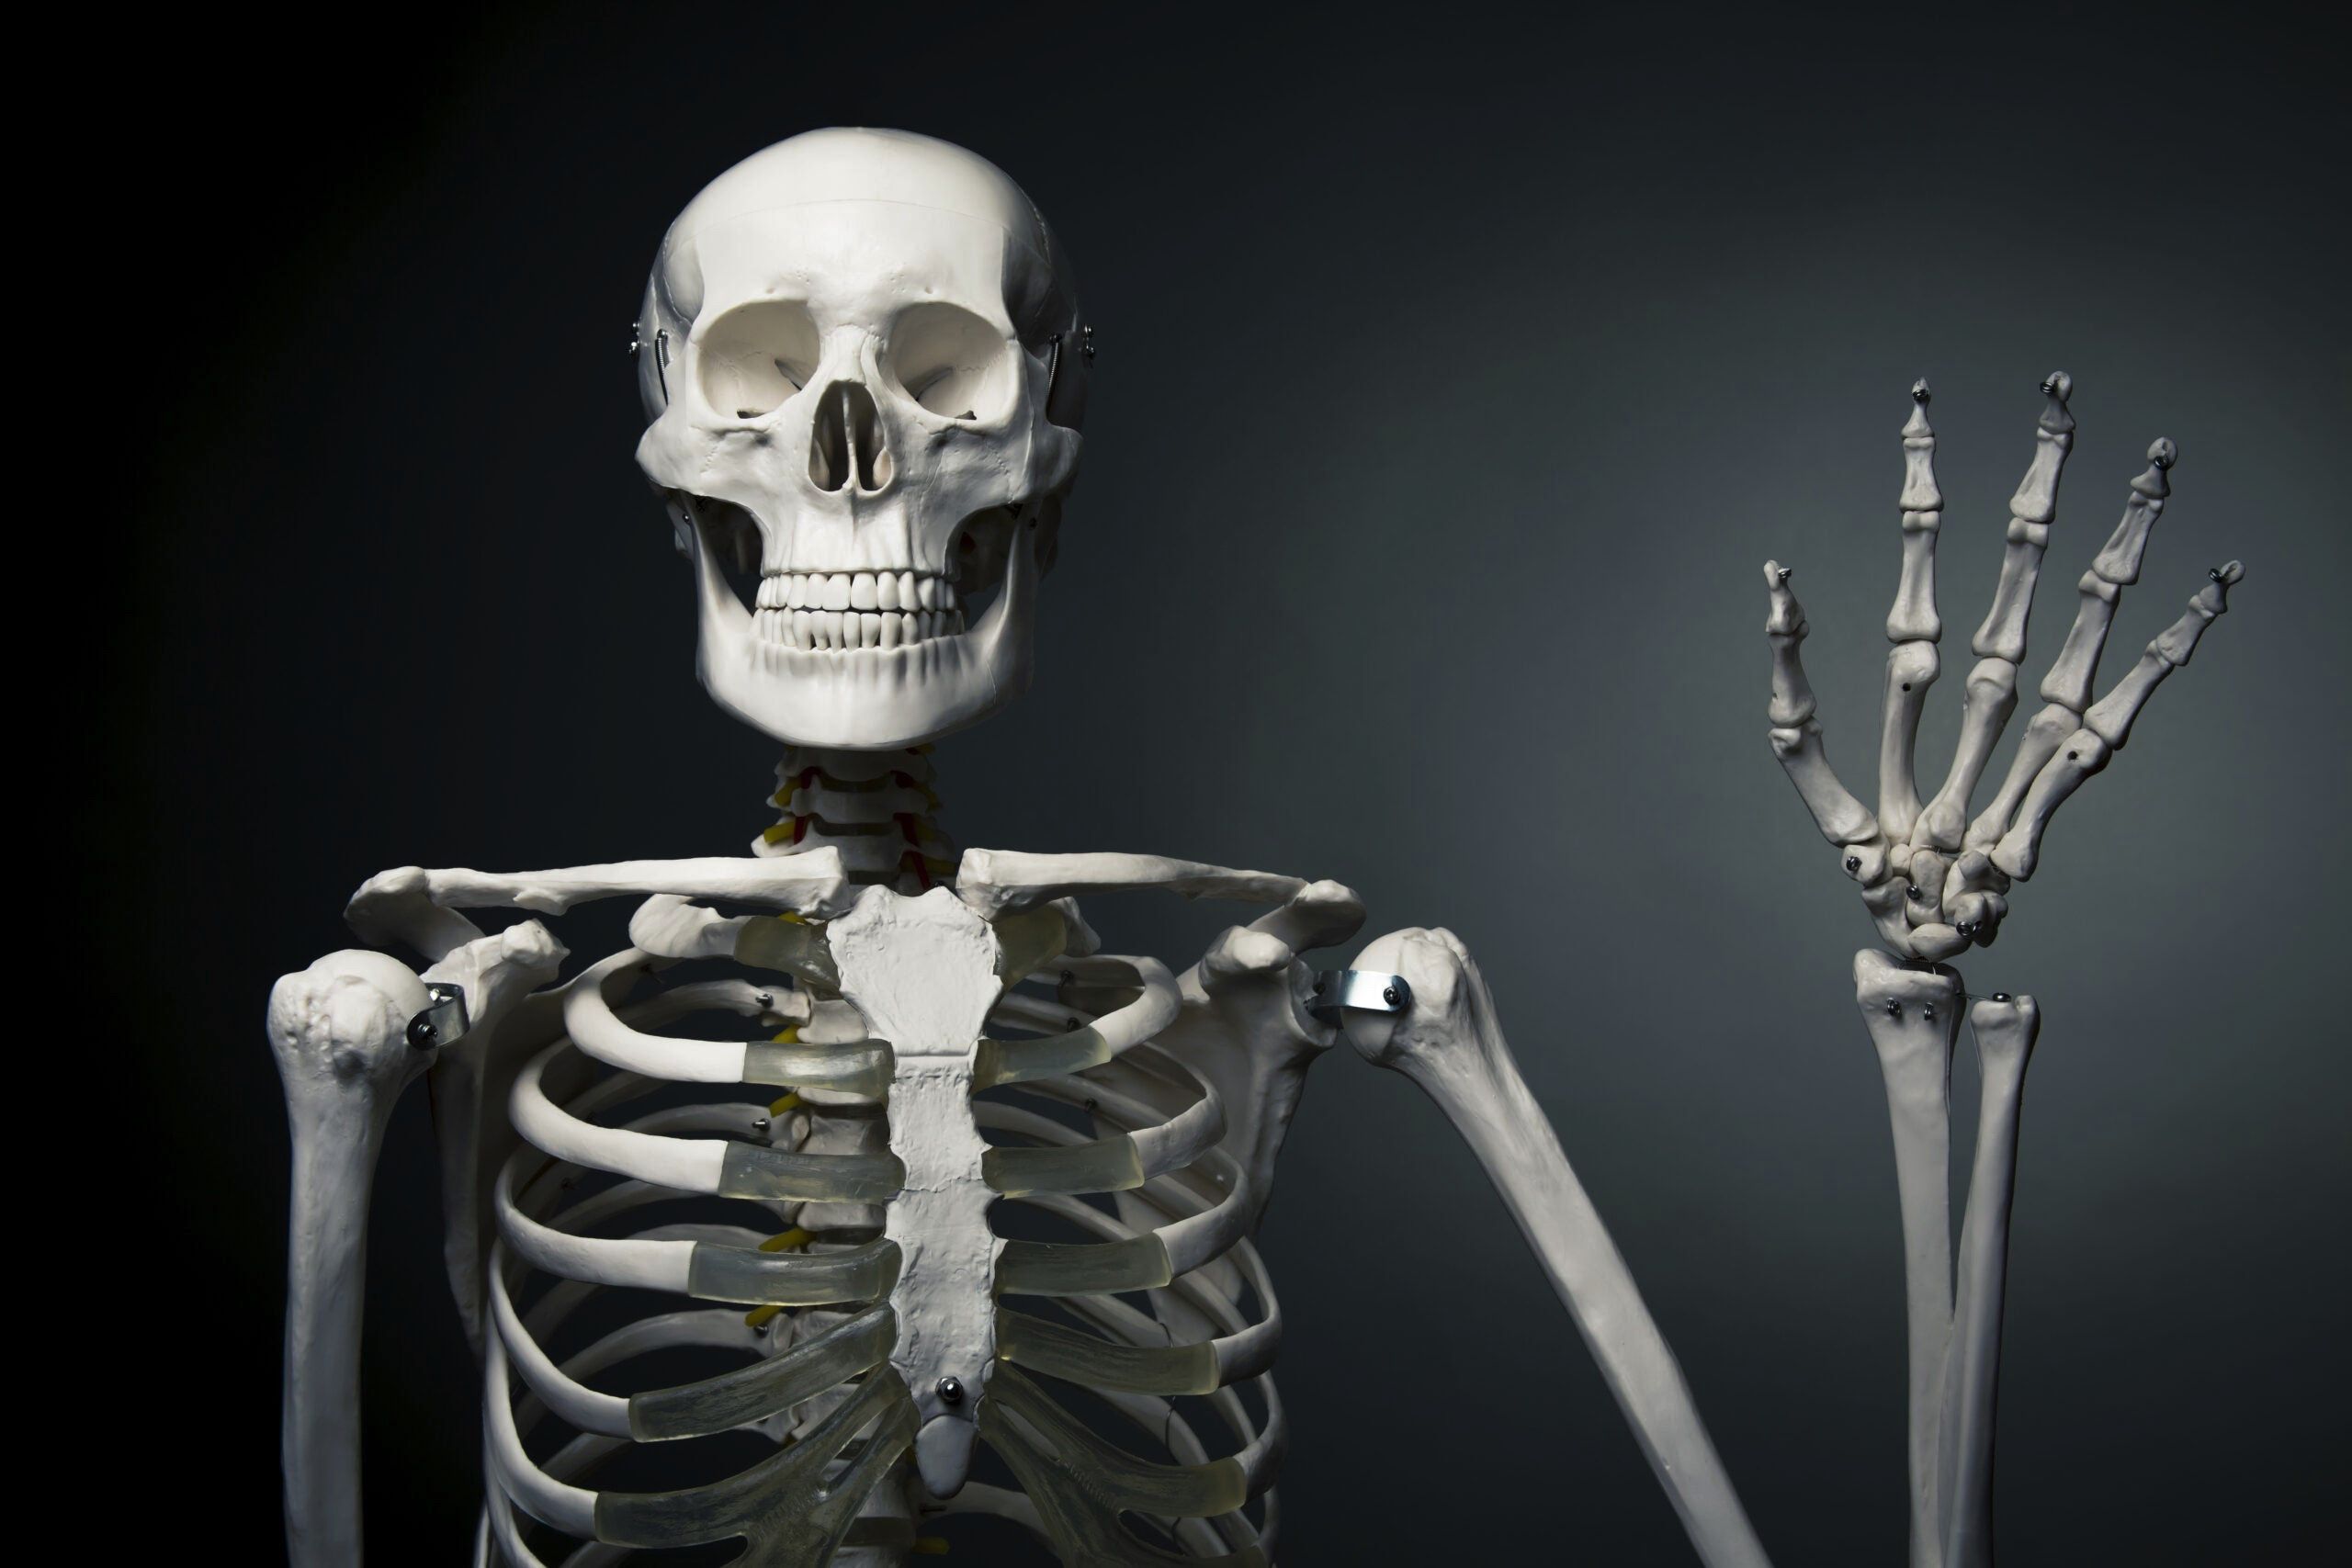 schelet de om pozat din profil in timp ce face cu mana